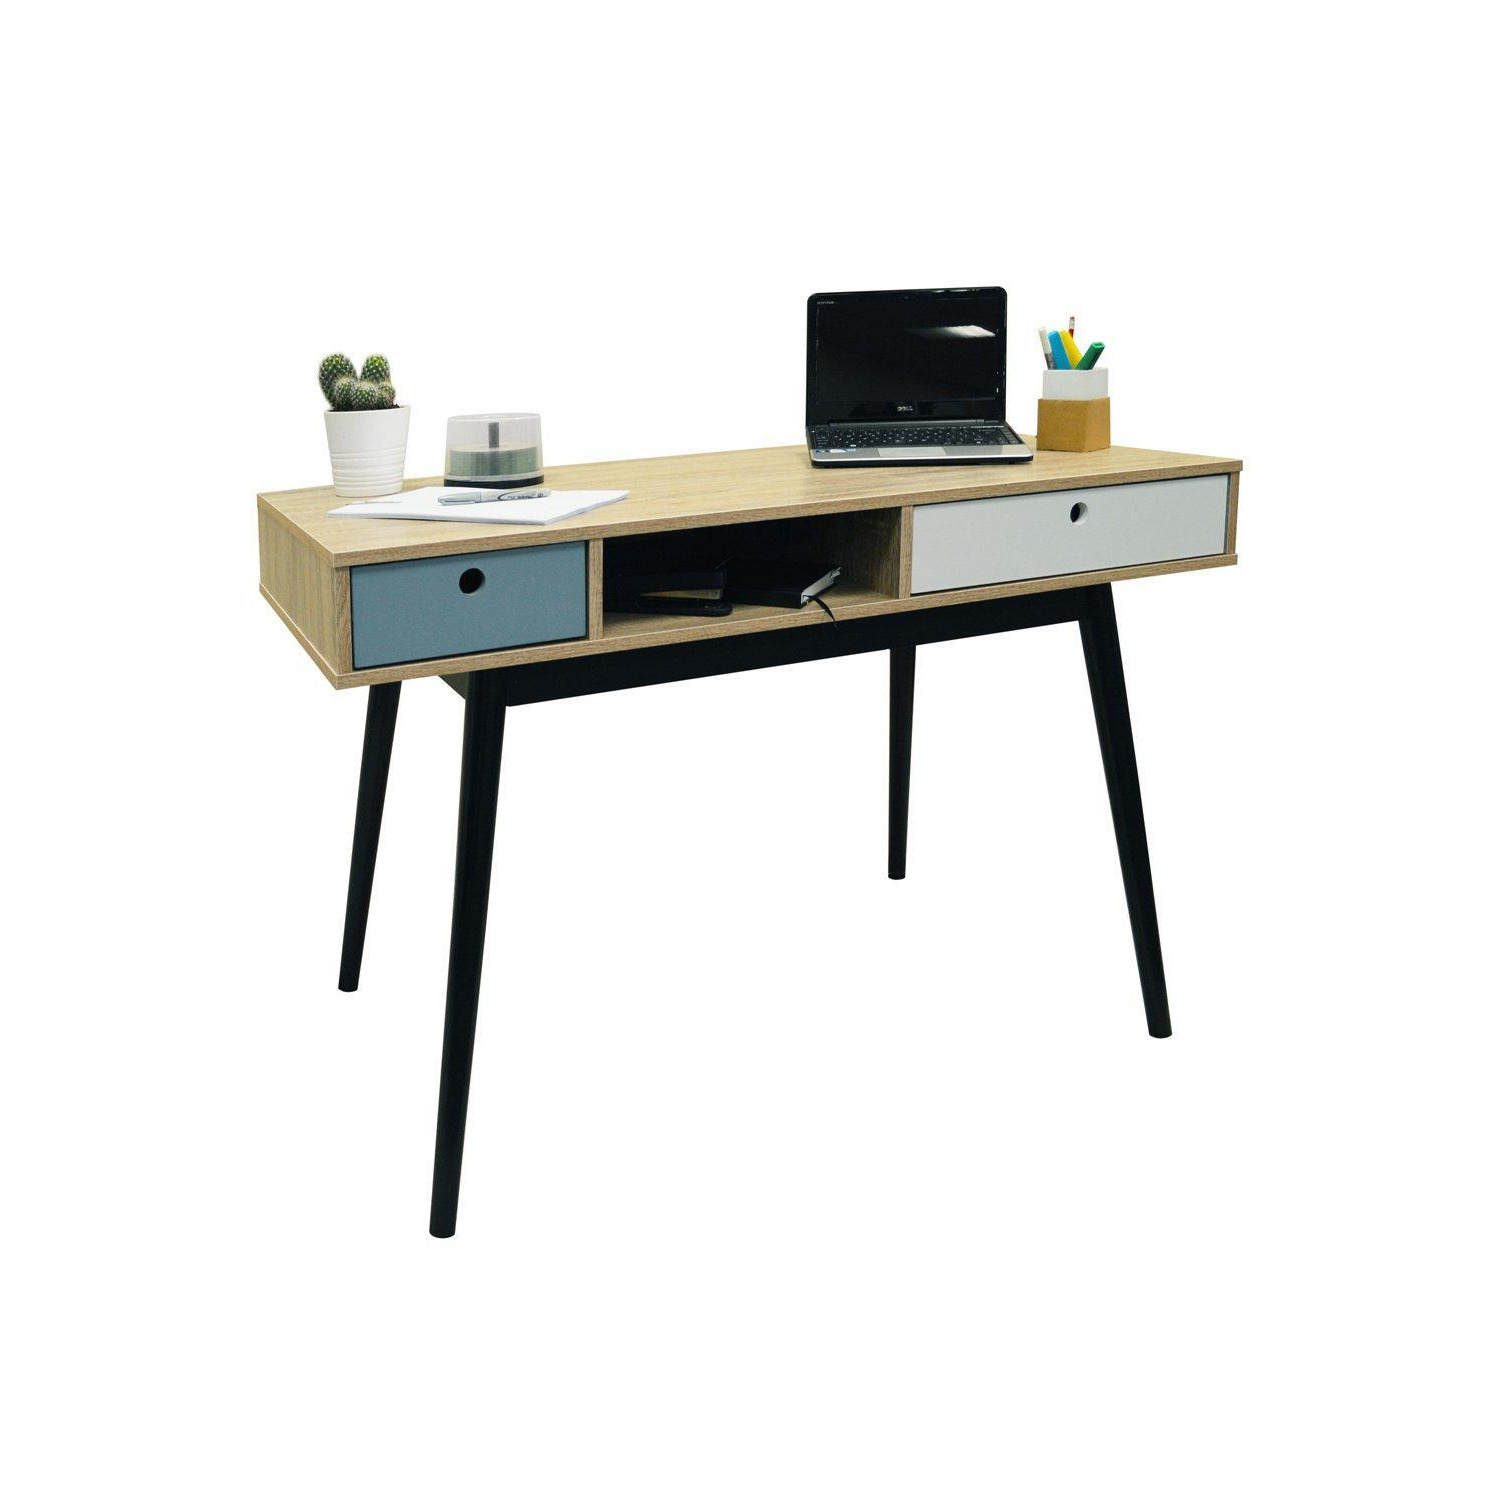 'Industrial' - 2 Drawer Office Computer Desk  Dressing Table - Oak  Black - image 1